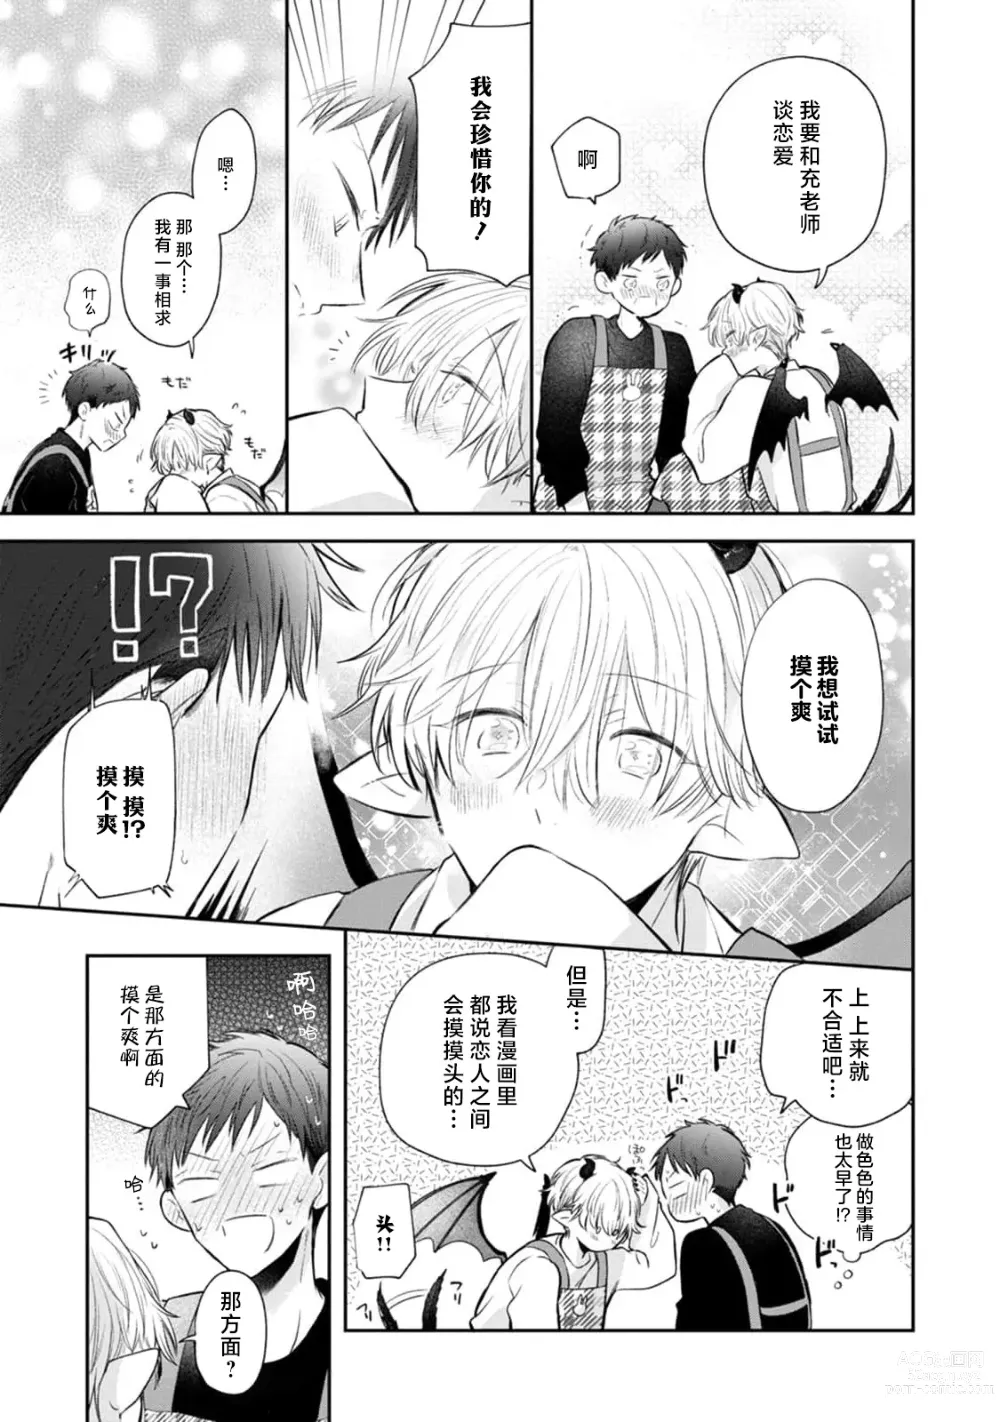 Page 25 of manga 叶羽老师全部是第一次 1-4